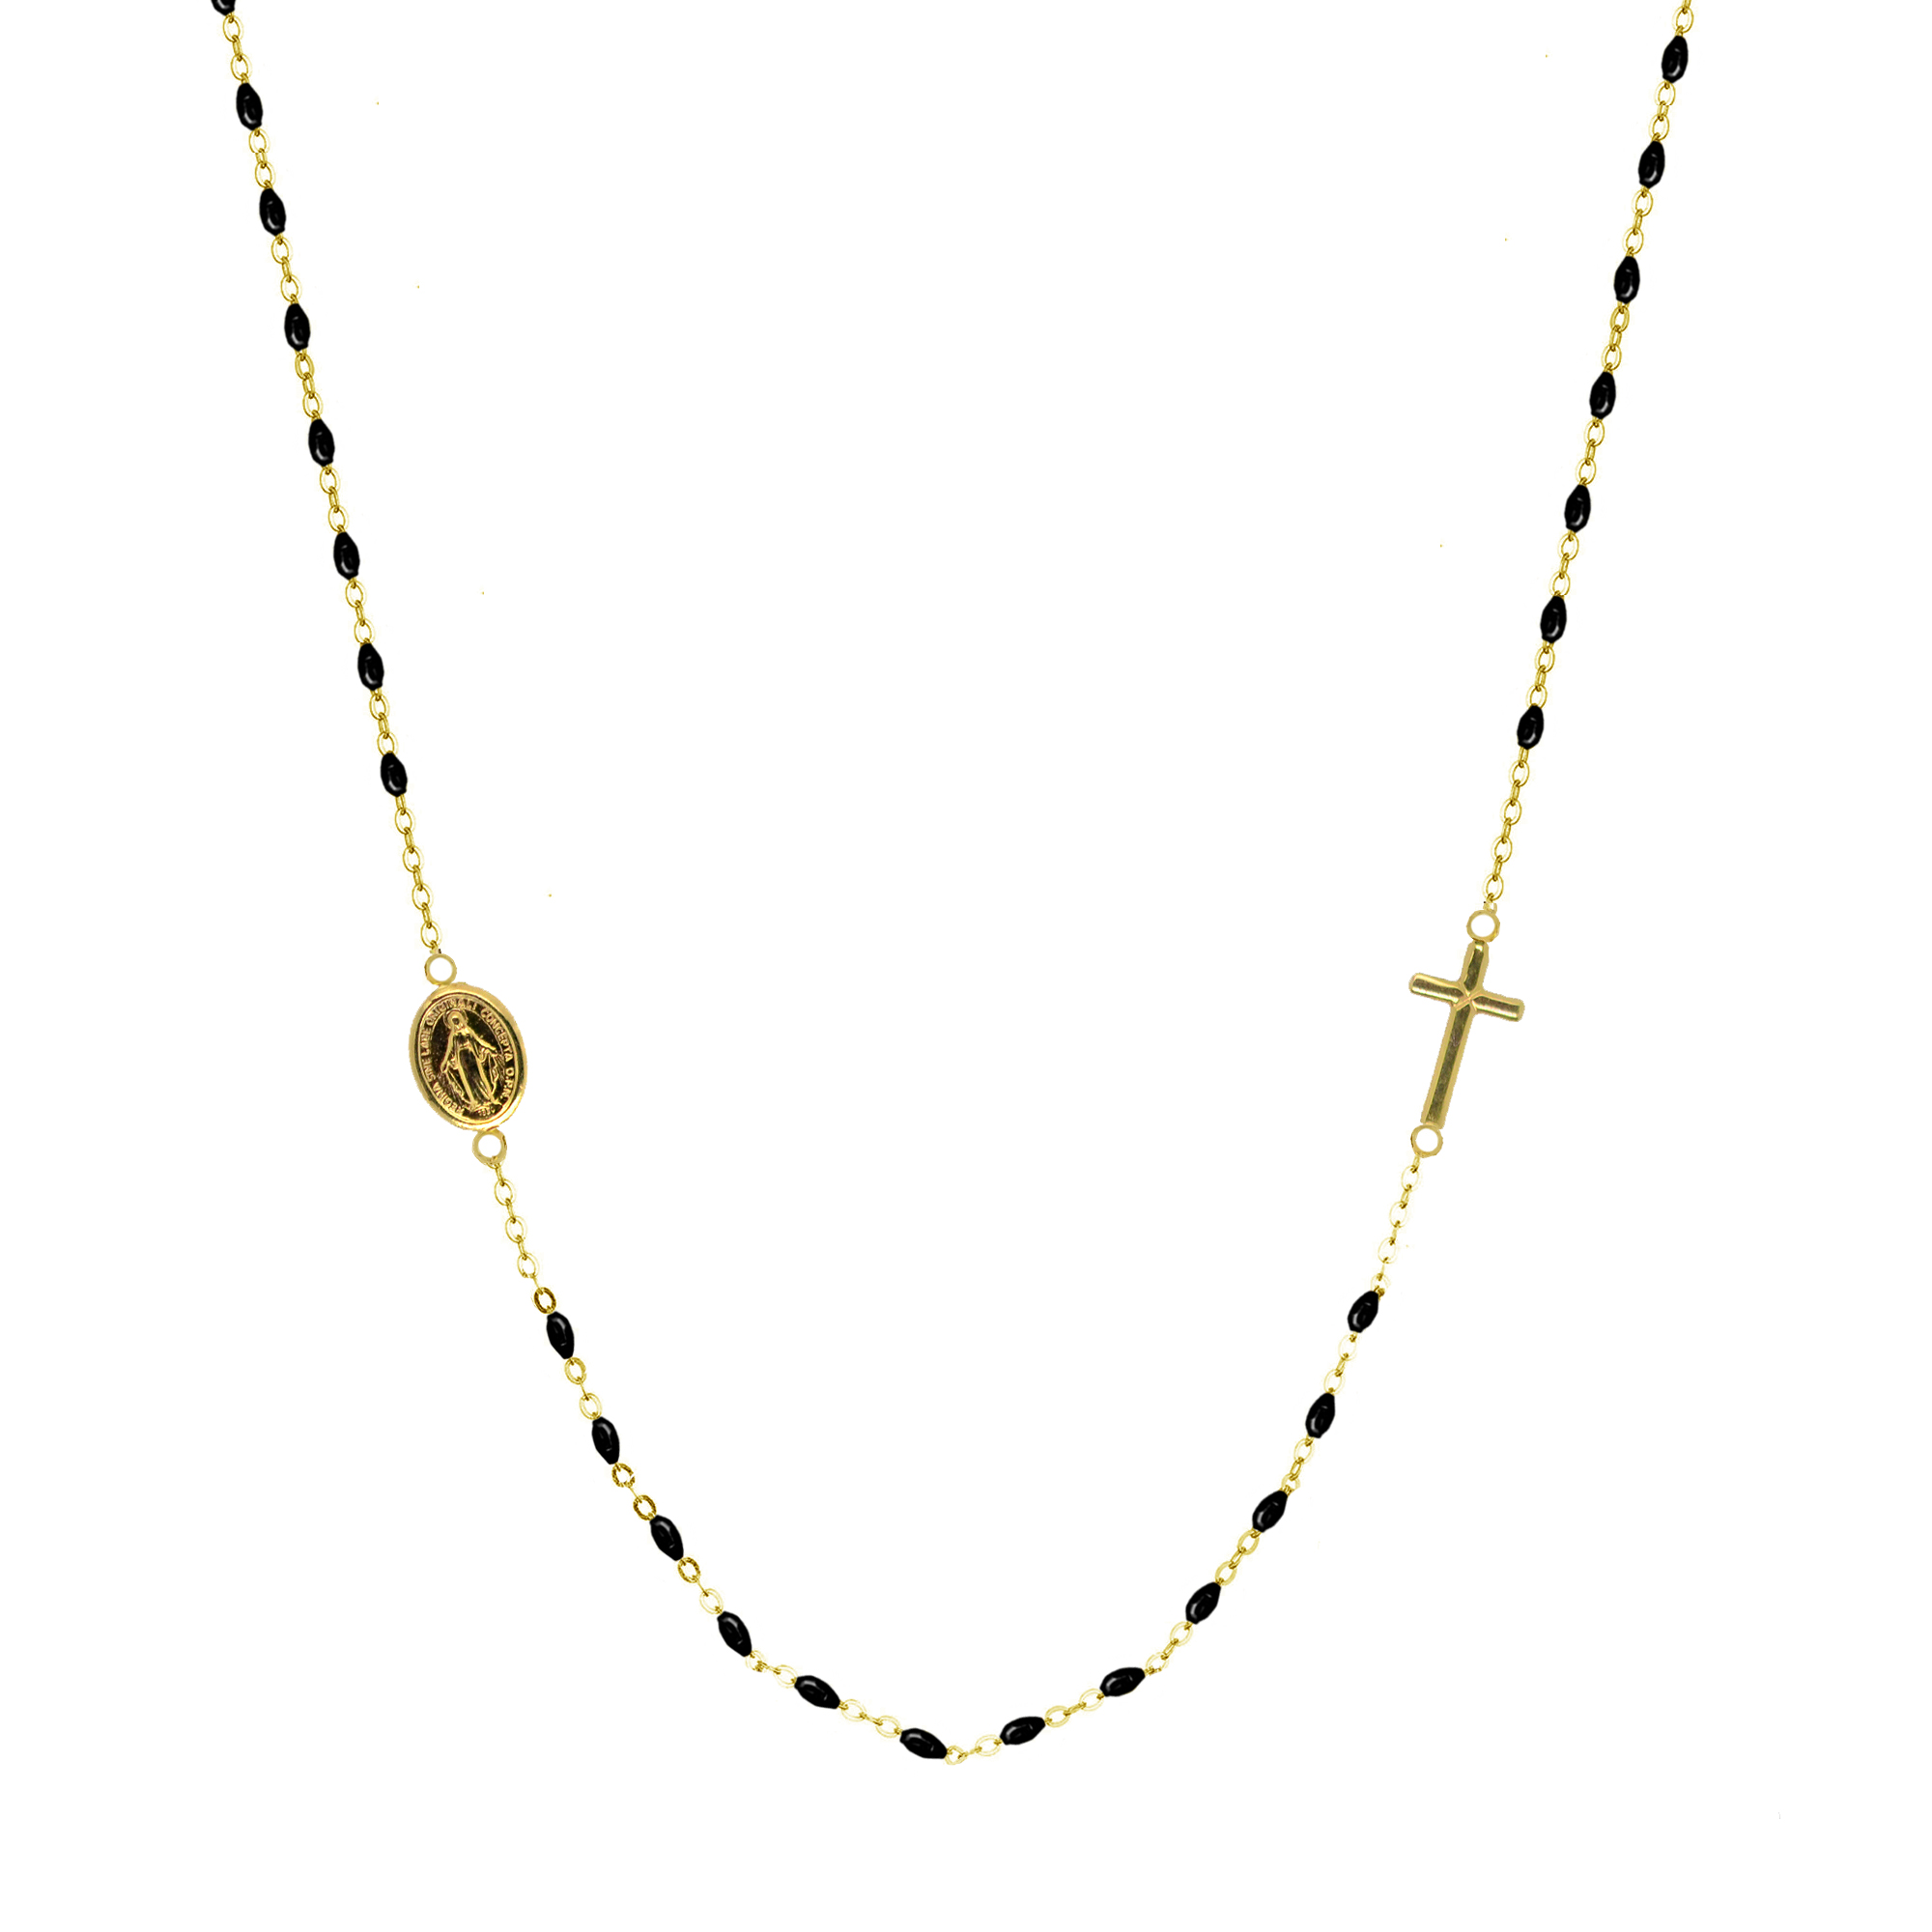 Evolution Group Zlatý 14 karátový náhrdelník růženec s křížem a medailonkem s Pannou Marií RŽ02 černý